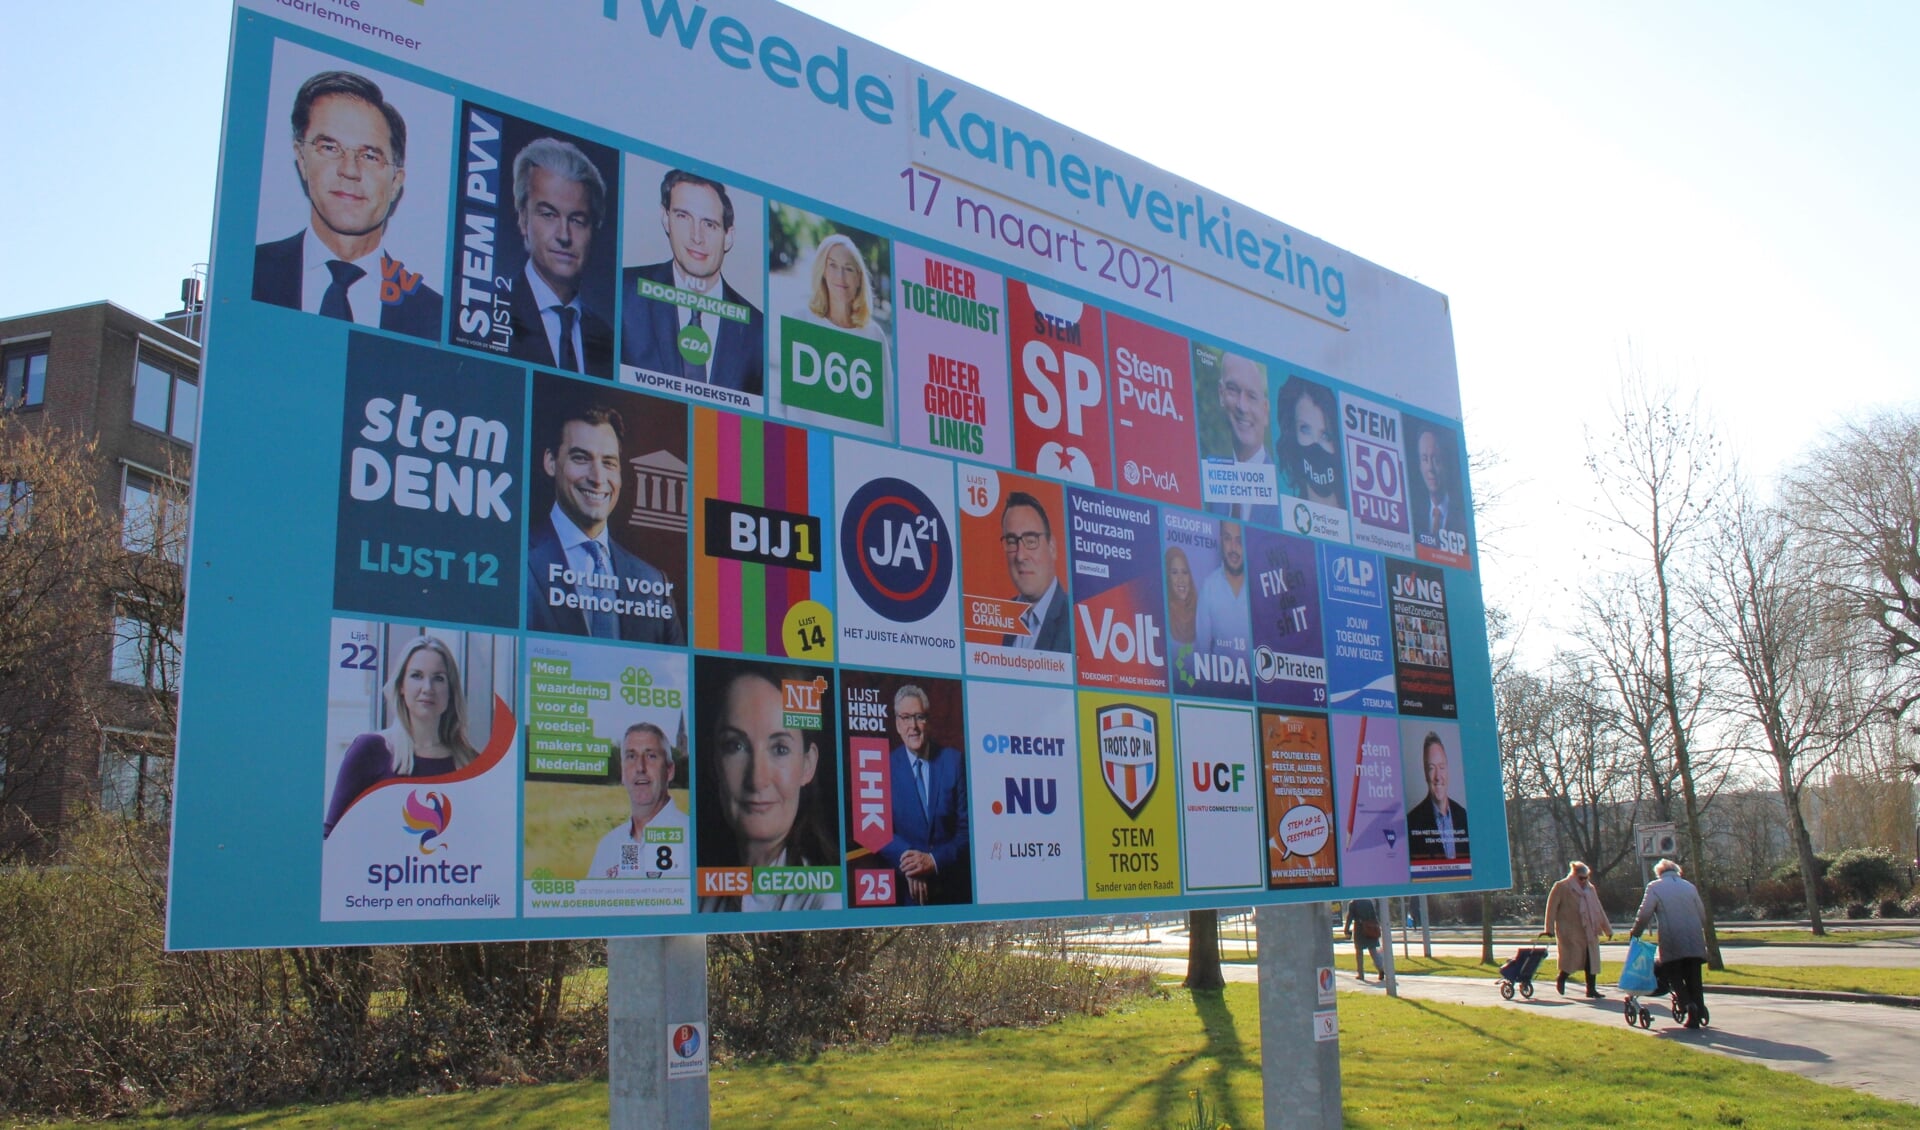 Op 15, 16 en 17 maart dit jaar stemt Nederland opnieuw voor de Tweede Kamer, maar hoe verging het de vorige verkiezingen?